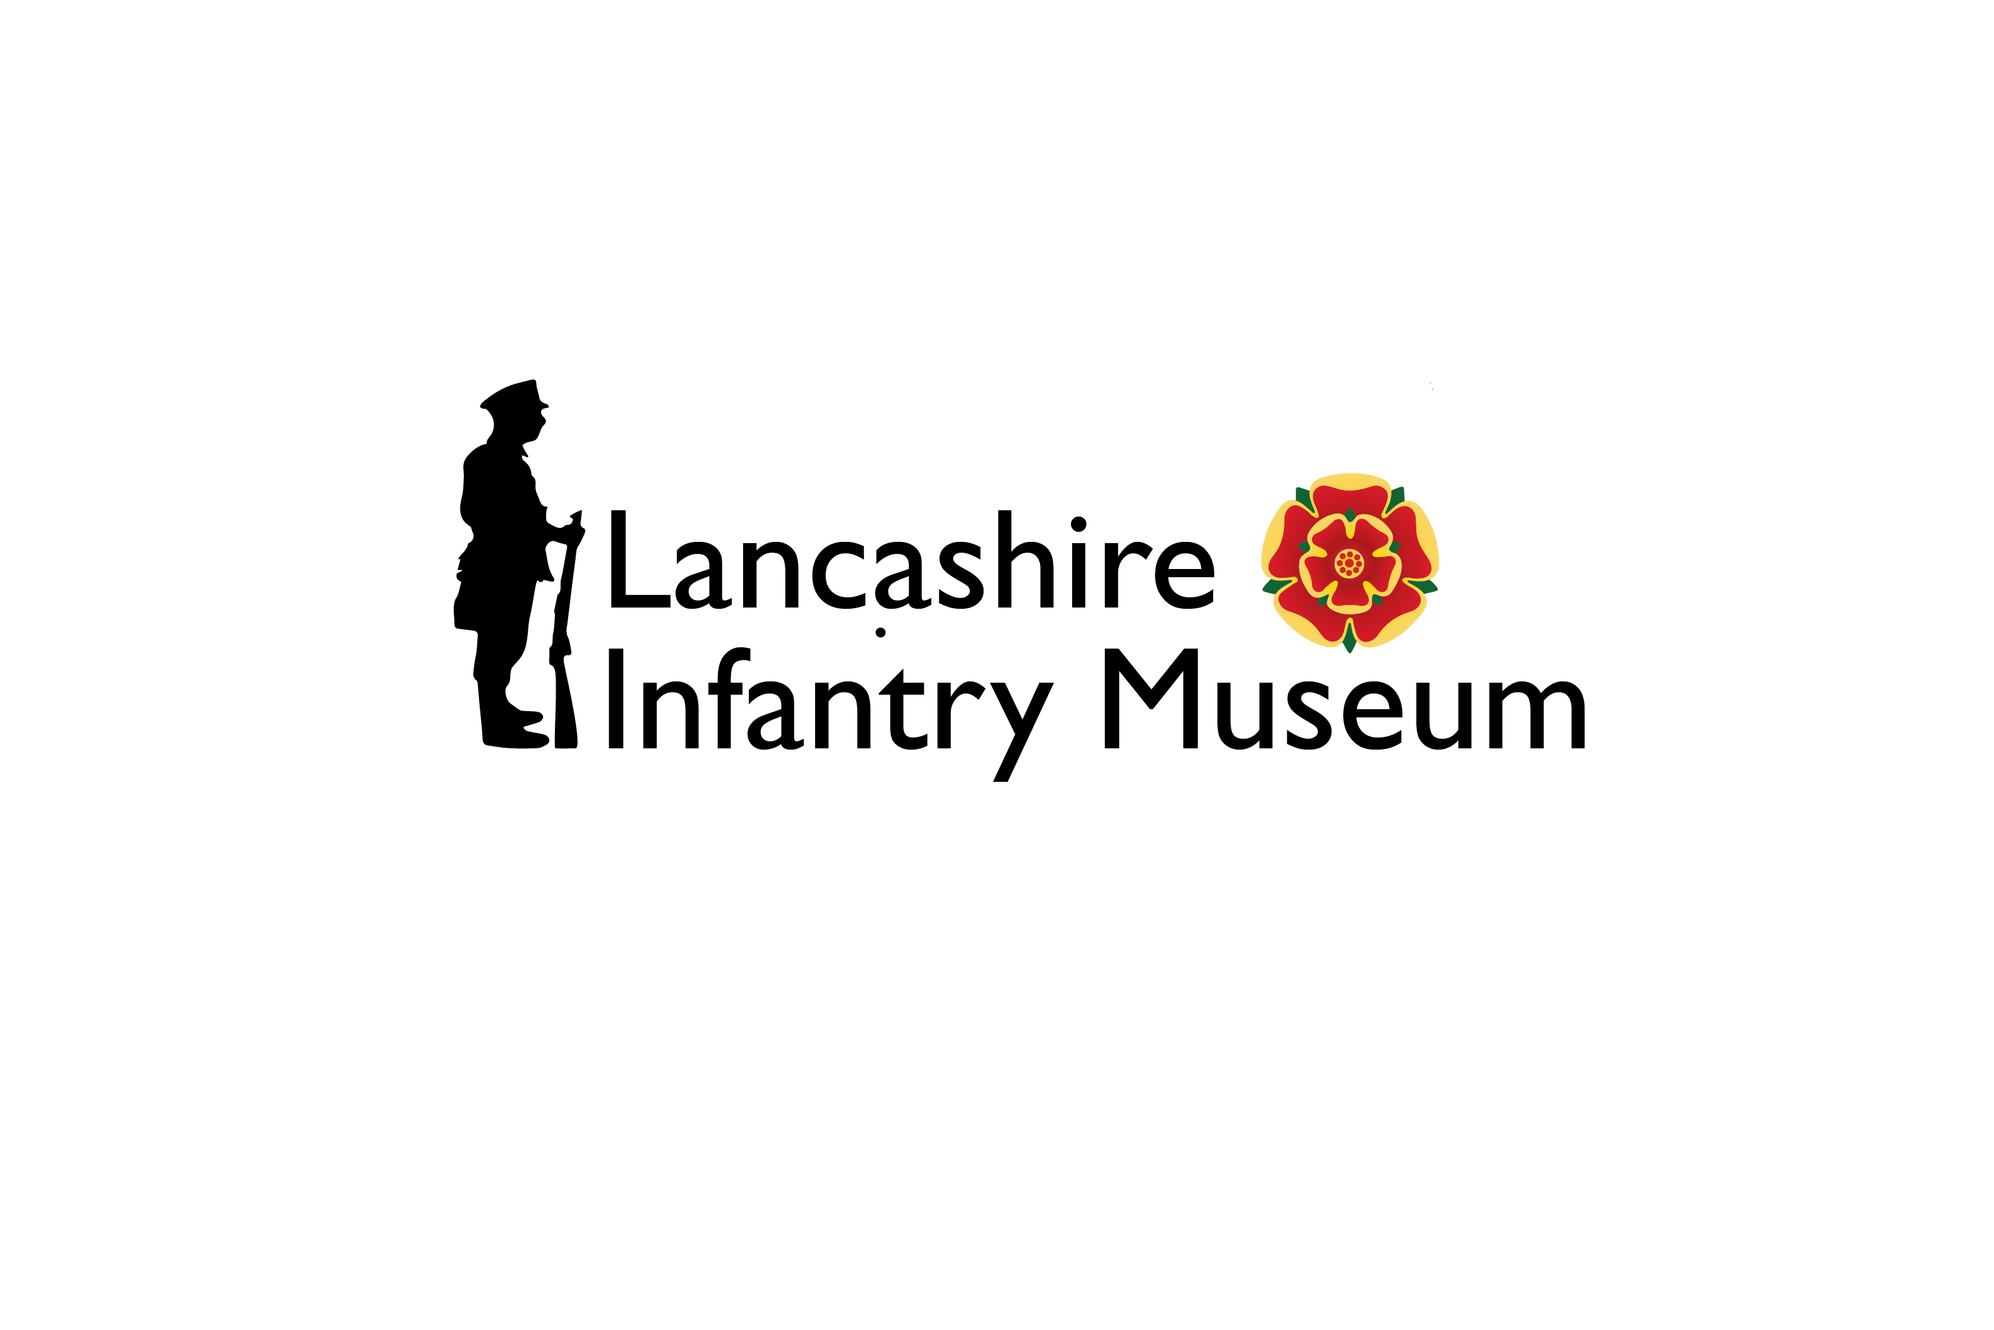 www.lancashireinfantrymuseum.org.uk